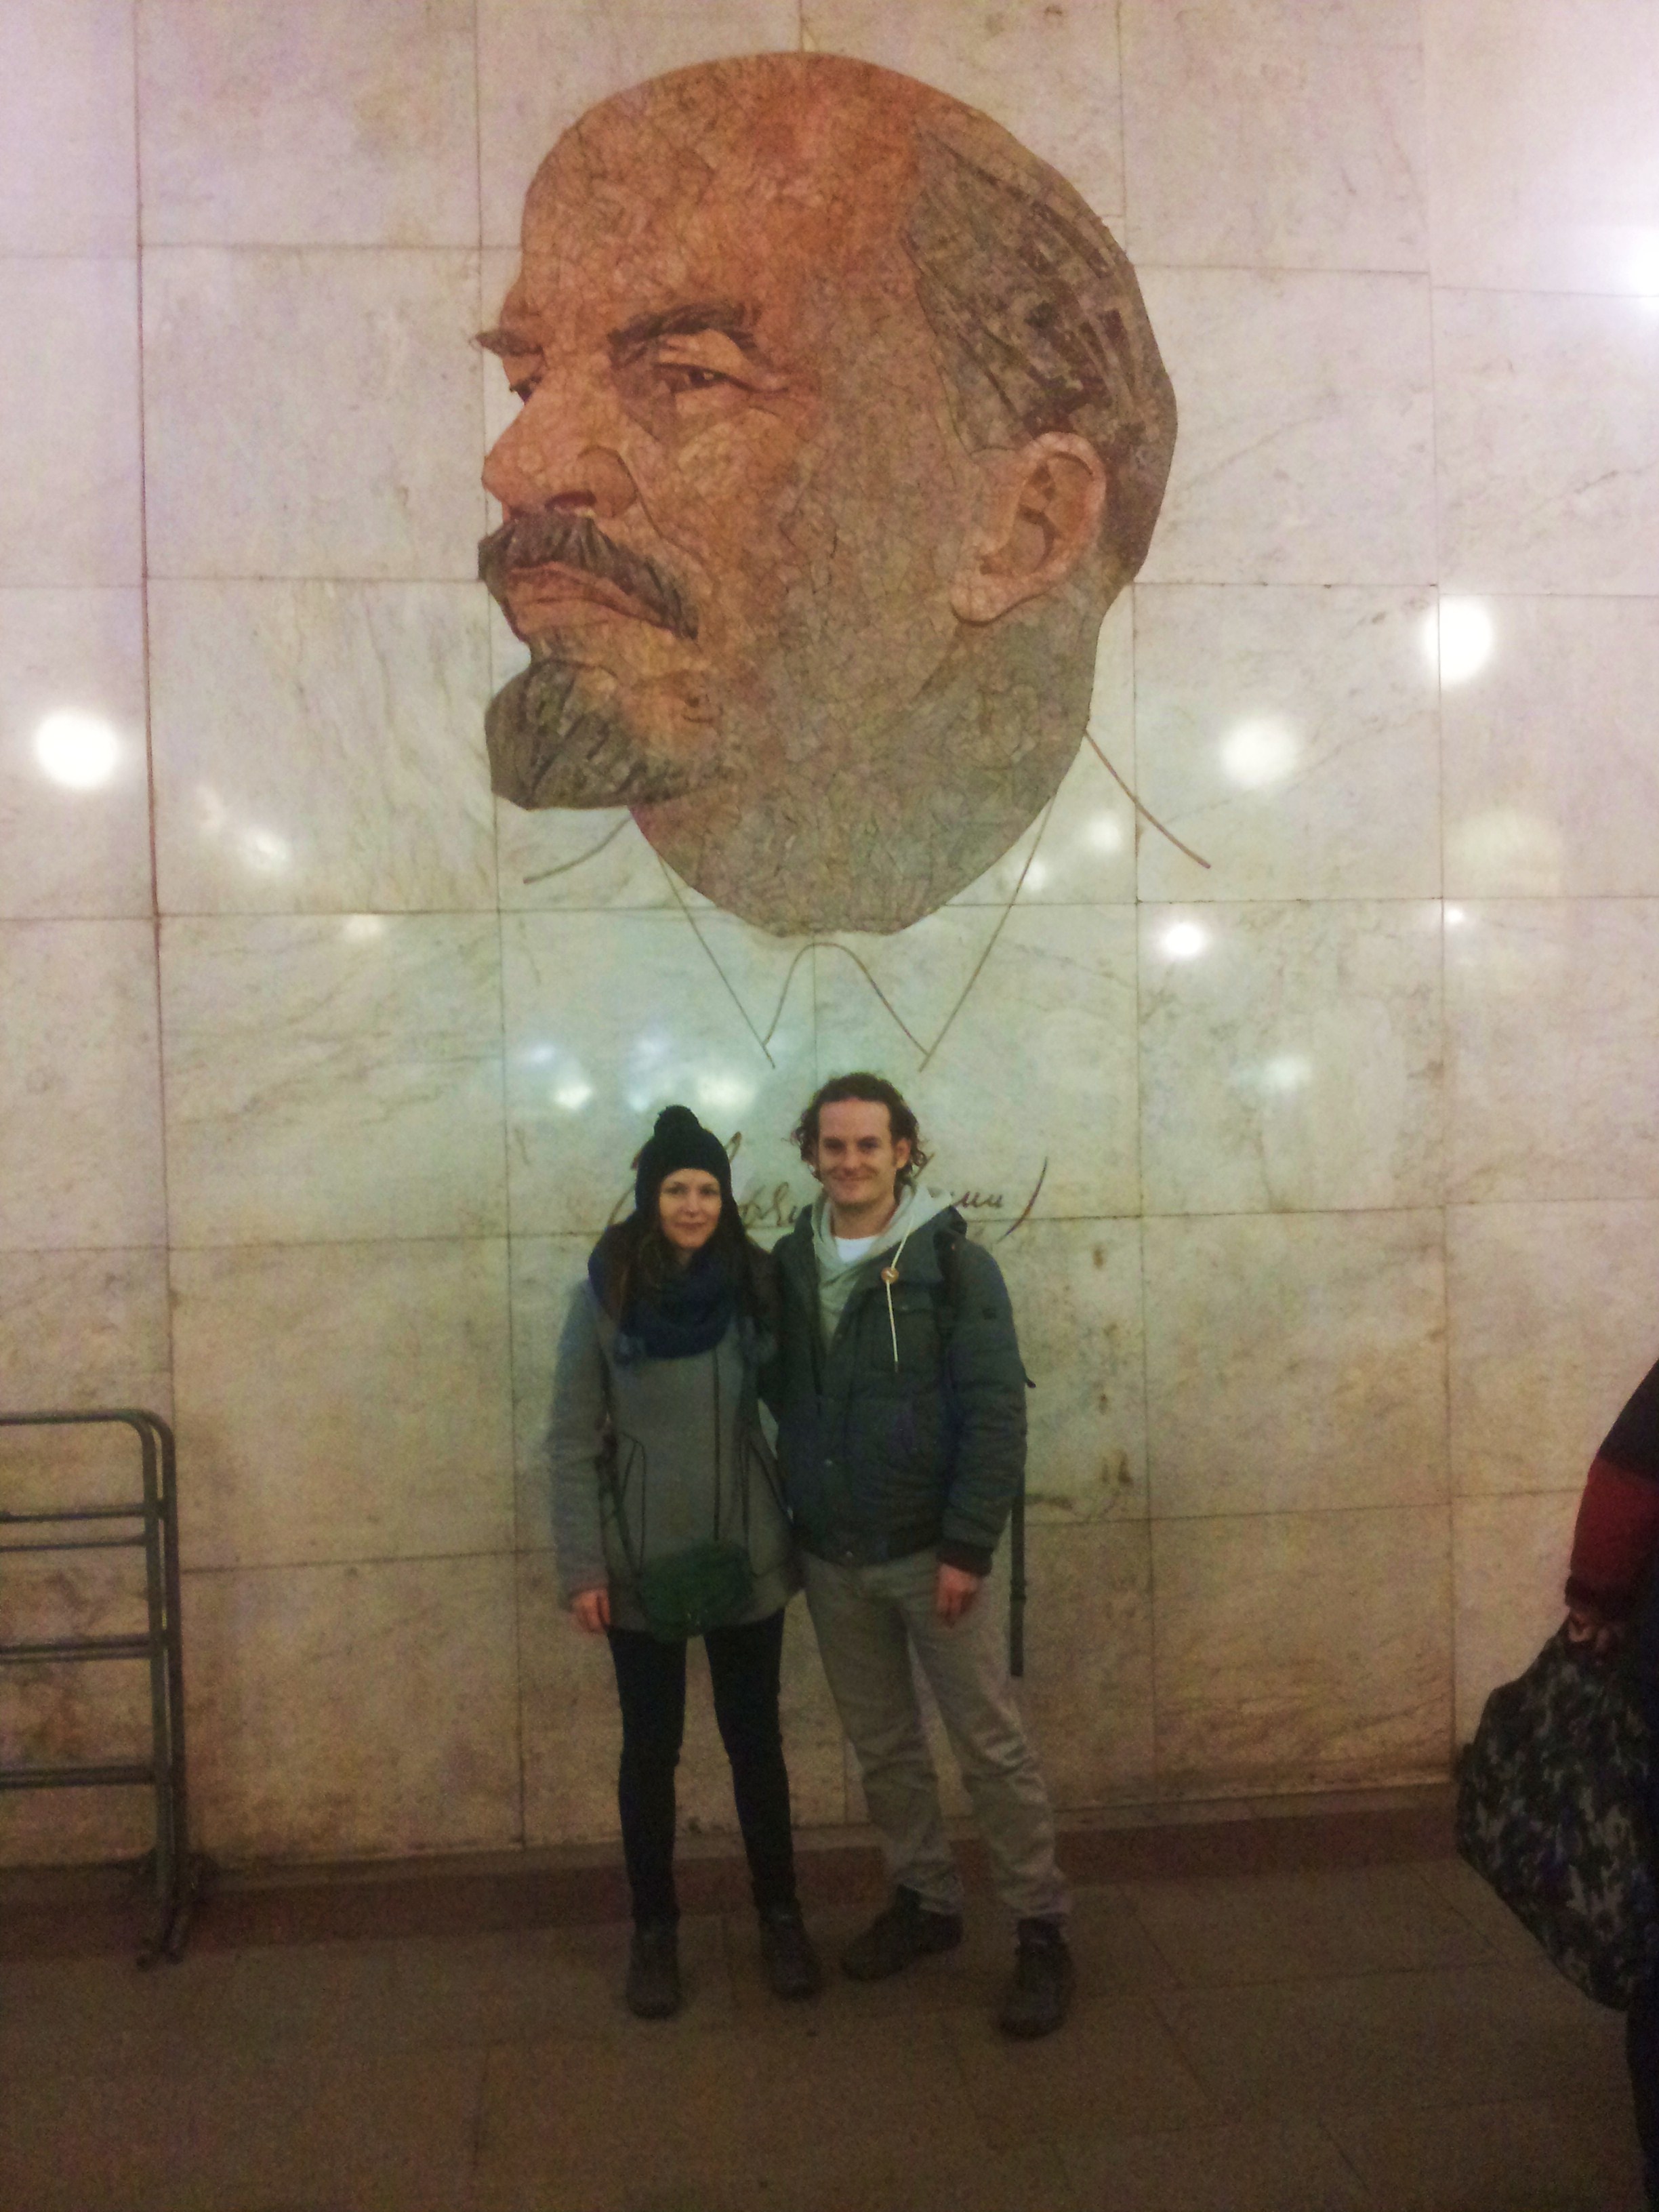 Leninportret in een metrostation